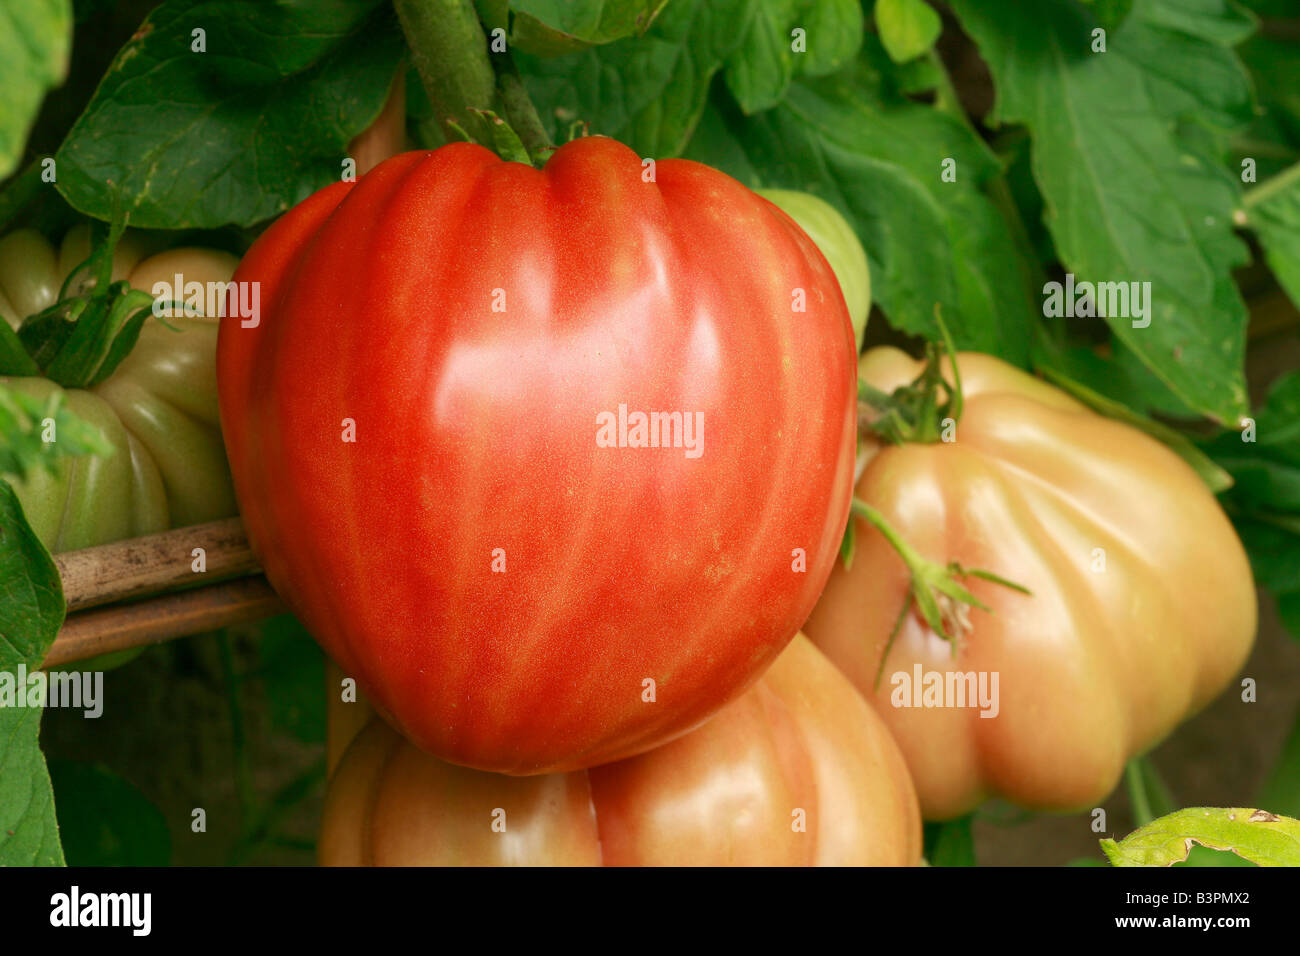 Tomato 'Cuor di Bue' Stock Photo